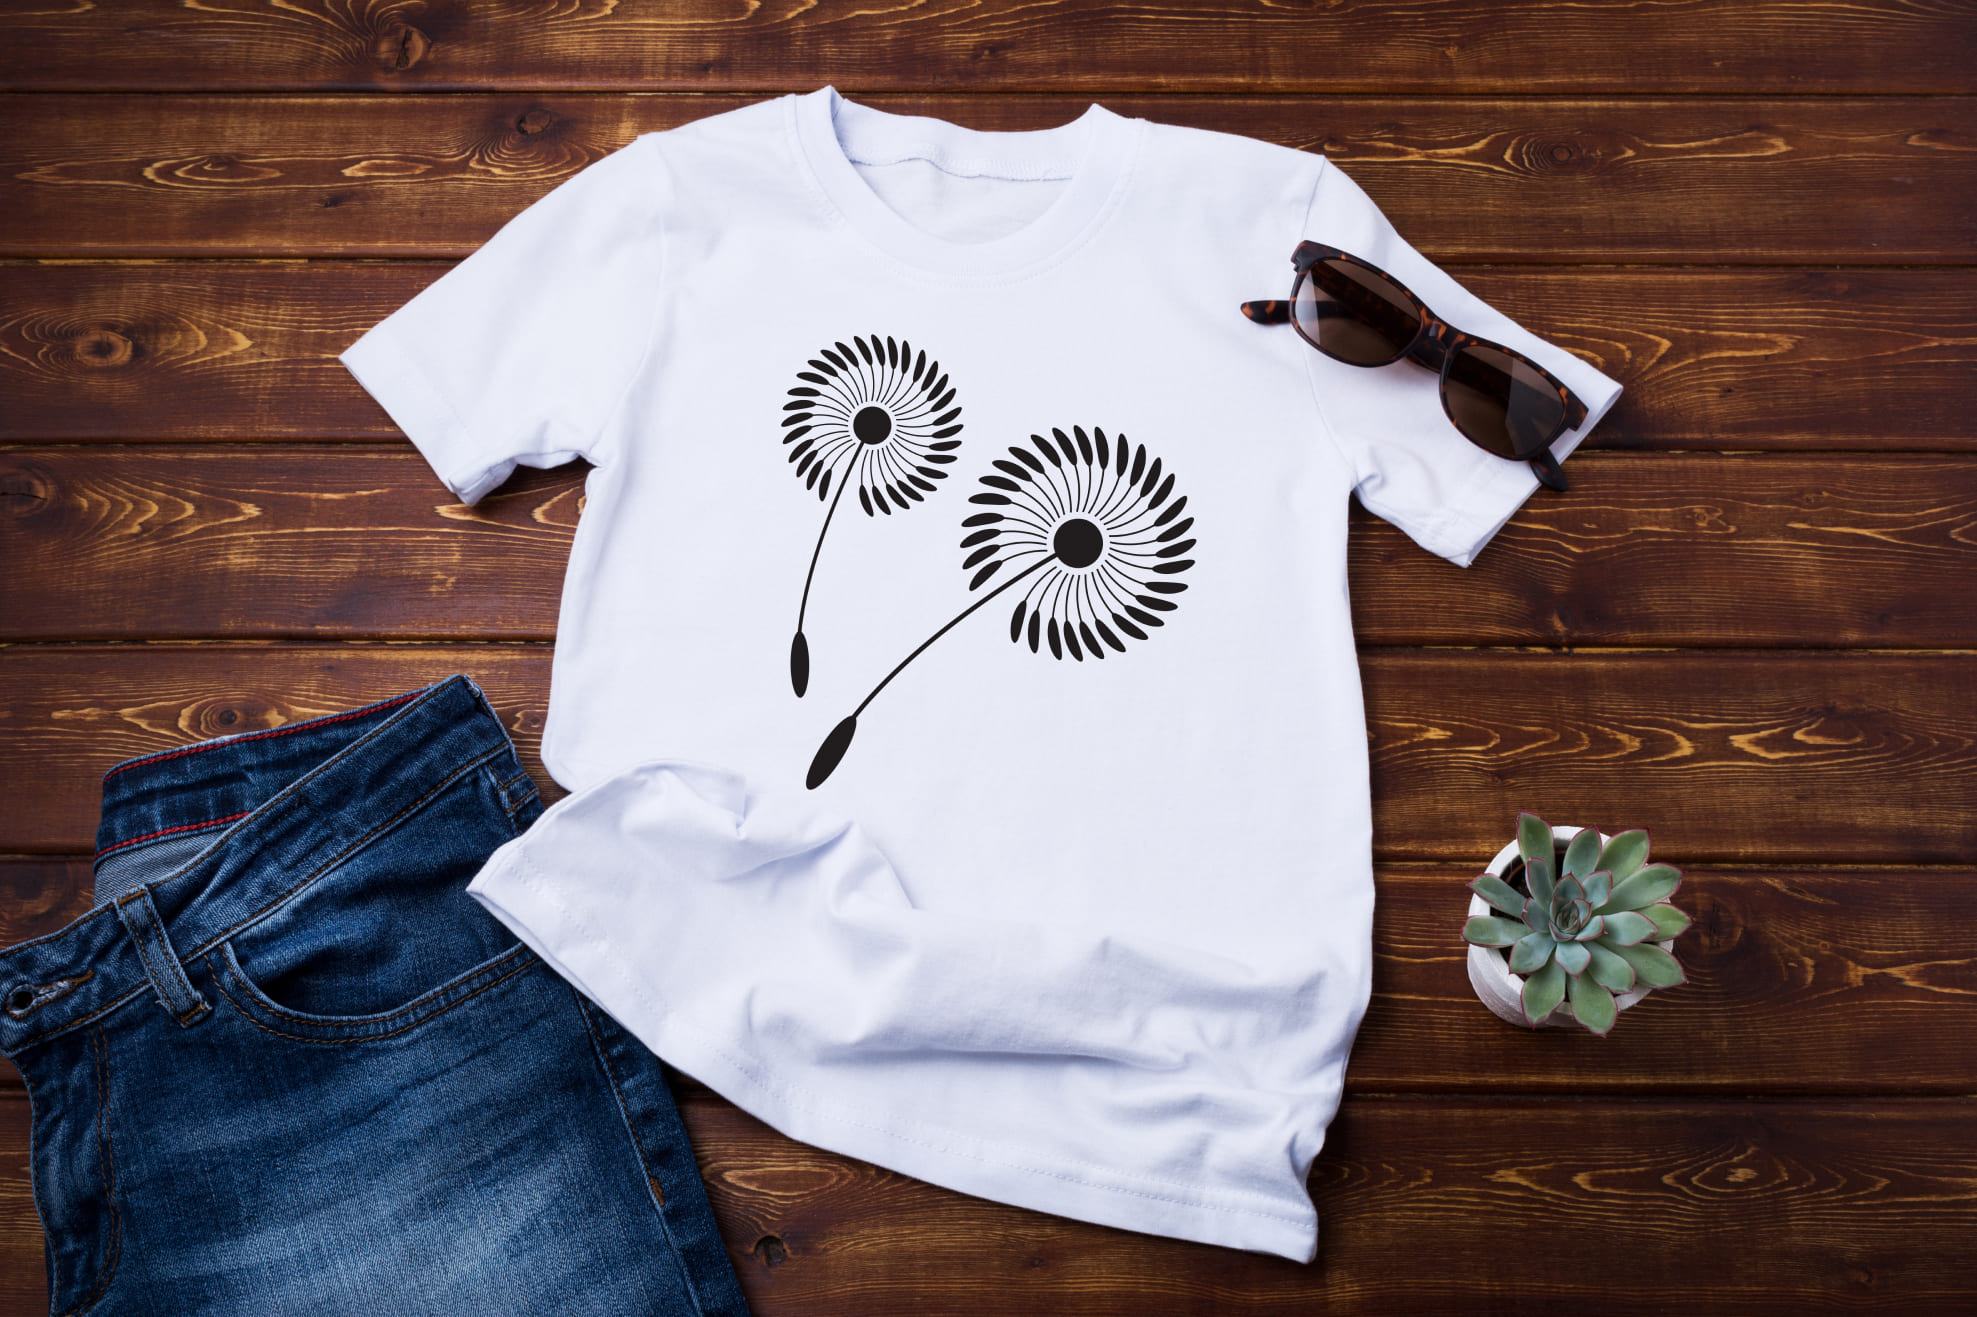 T-shirt image with unique dandelion print in black color.